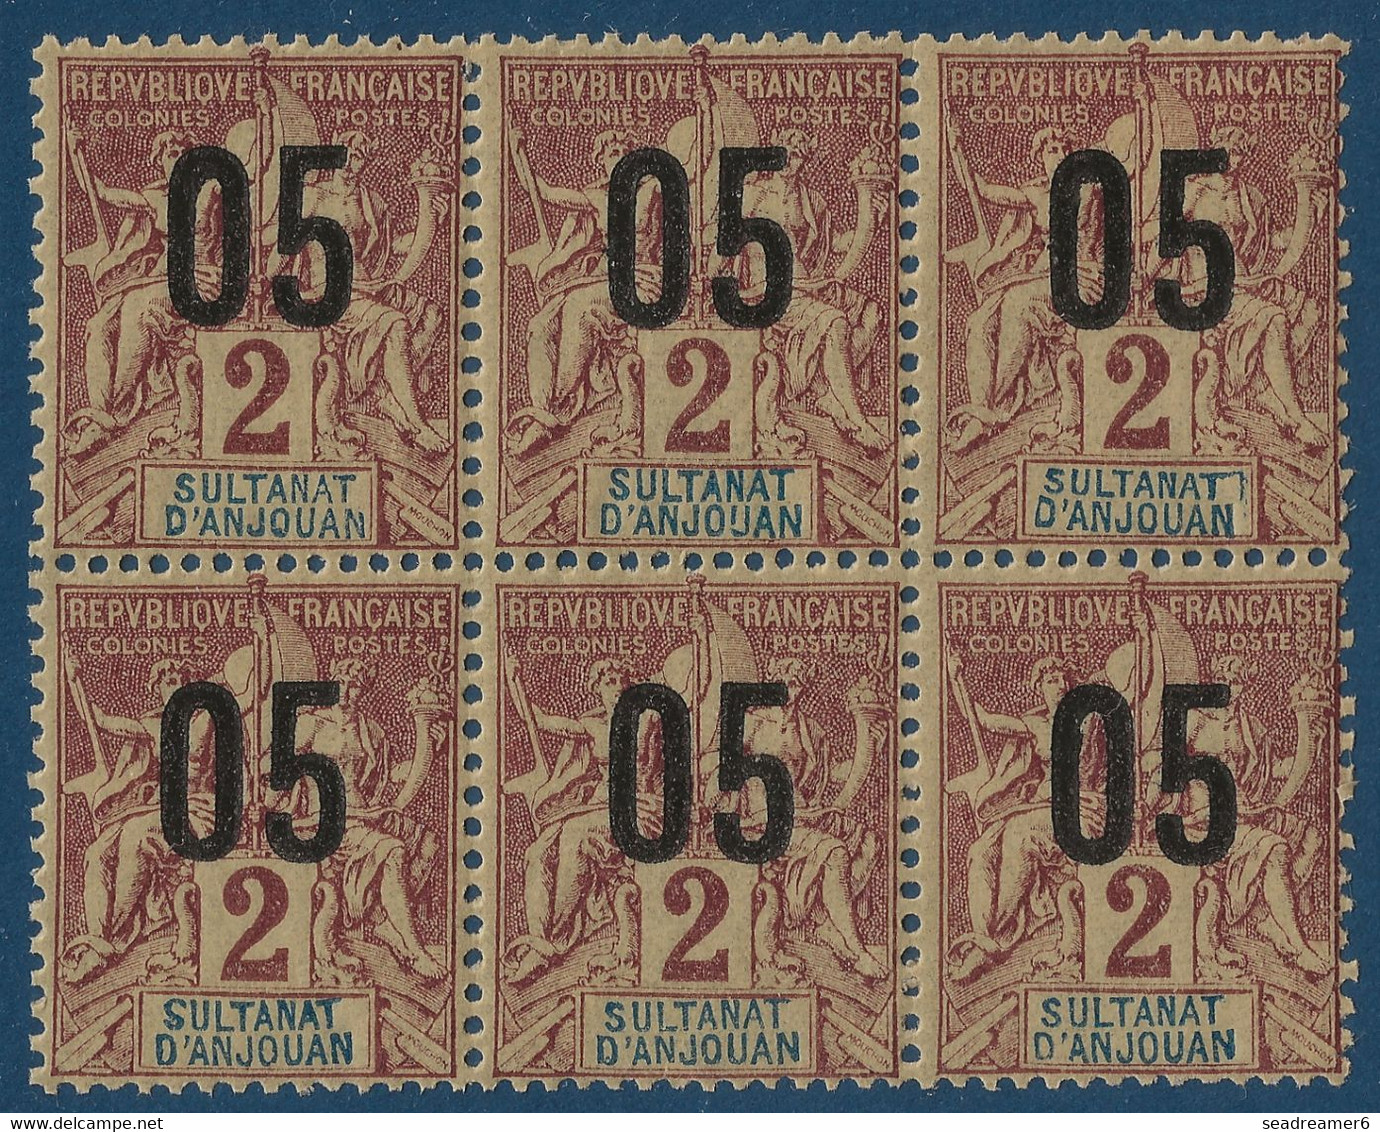 France Colonies Type Groupe Anjouan Bloc De 6 N°20**/* Surcharge Au Verso Partielle !! Fraicheur Postale & TTB - Unused Stamps